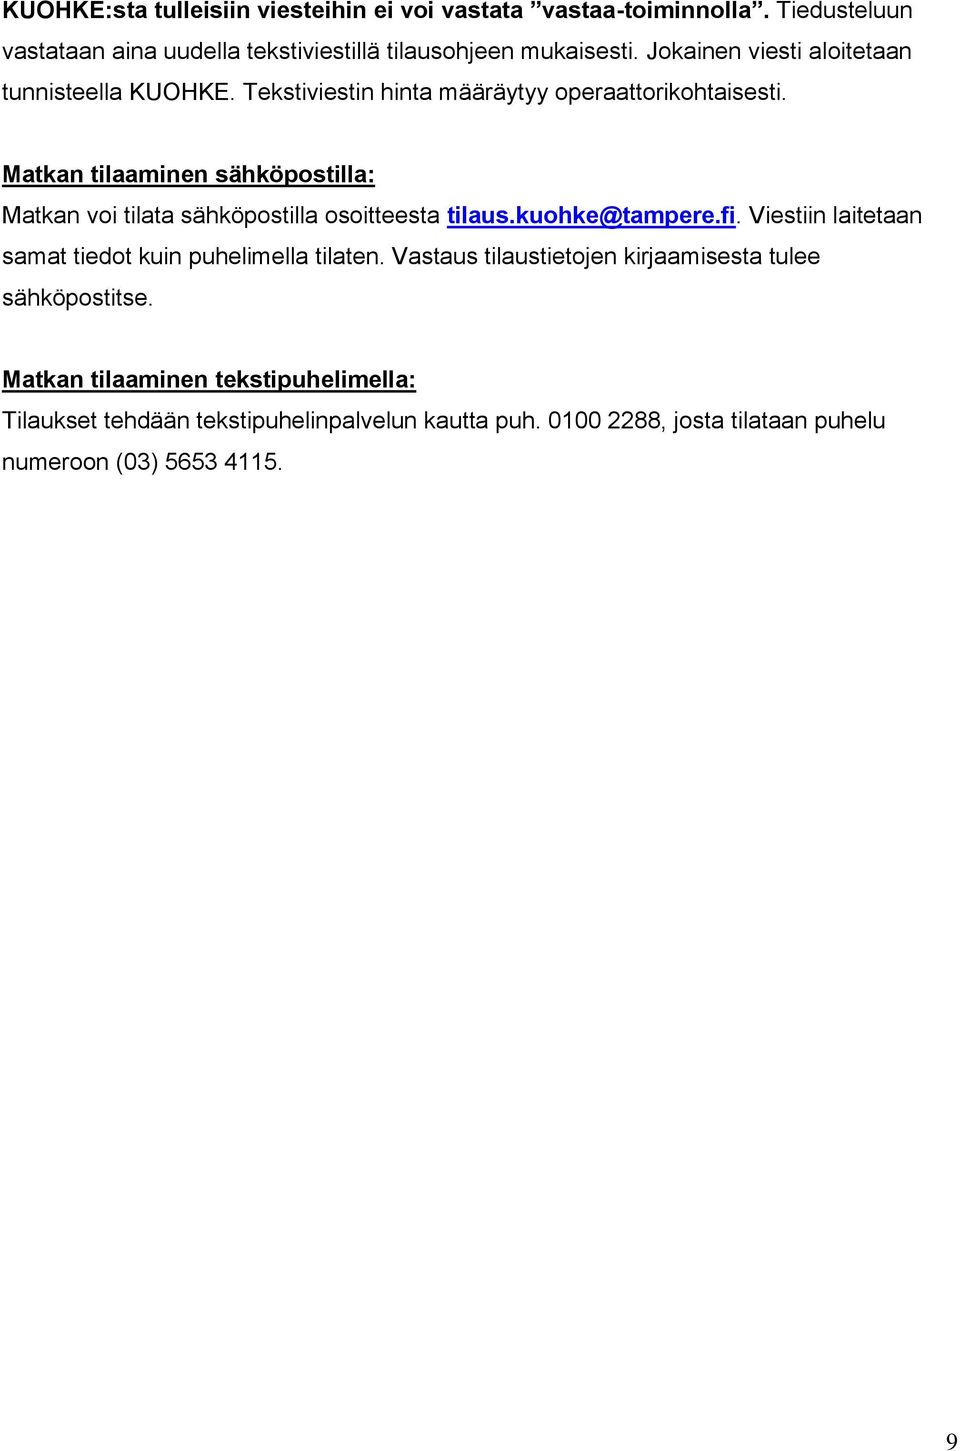 Matkan tilaaminen sähköpostilla: Matkan voi tilata sähköpostilla osoitteesta tilaus.kuohke@tampere.fi.